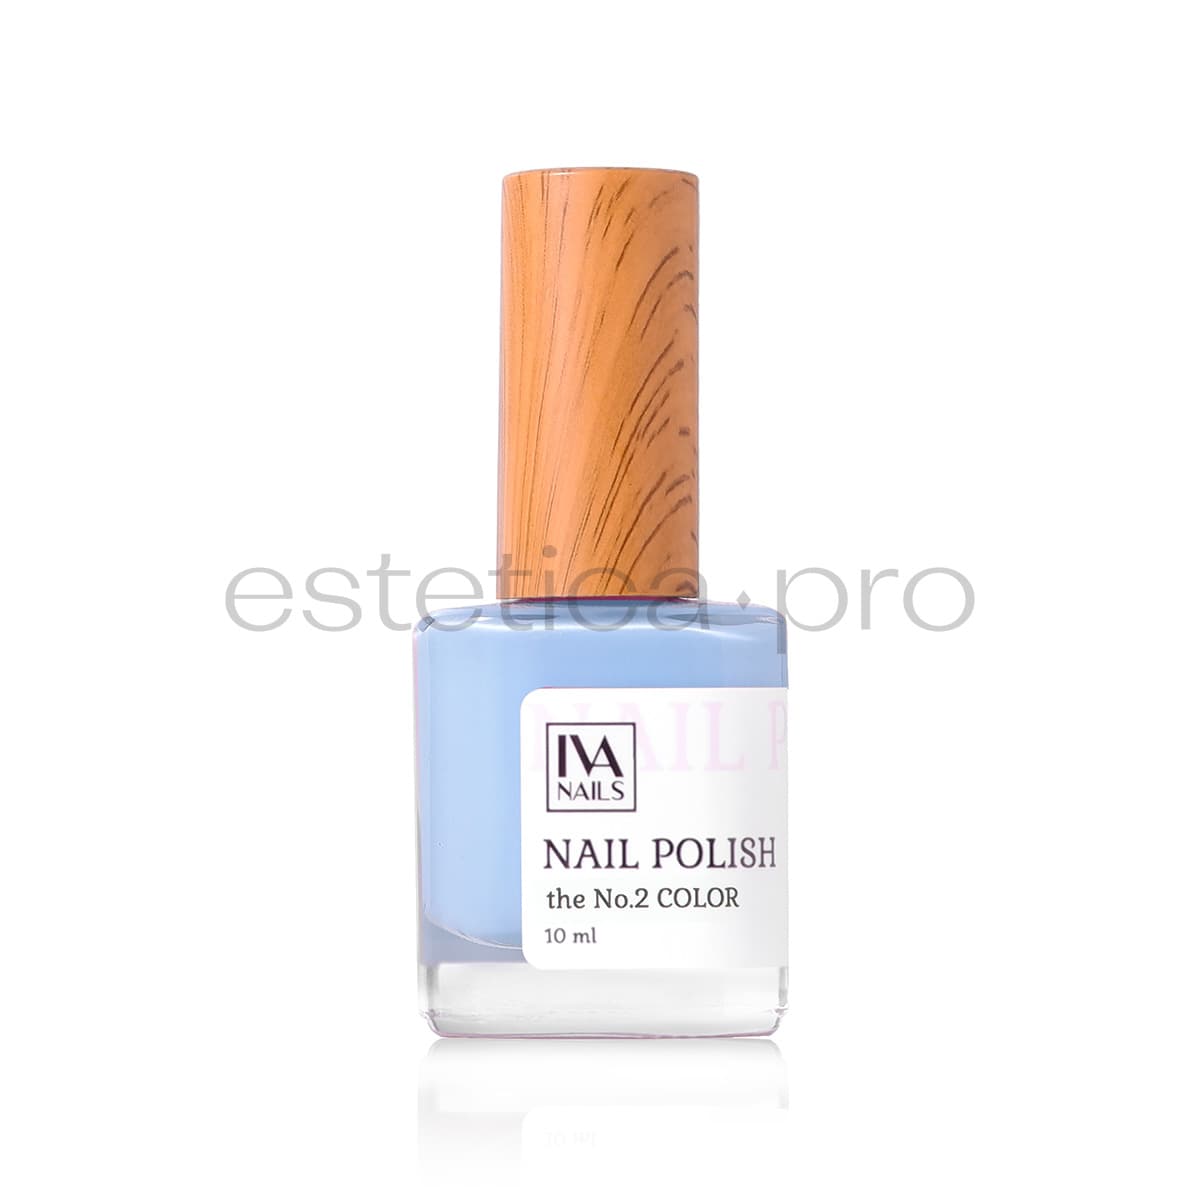 Лак для ногтей Iva Nails 02, 10 мл.